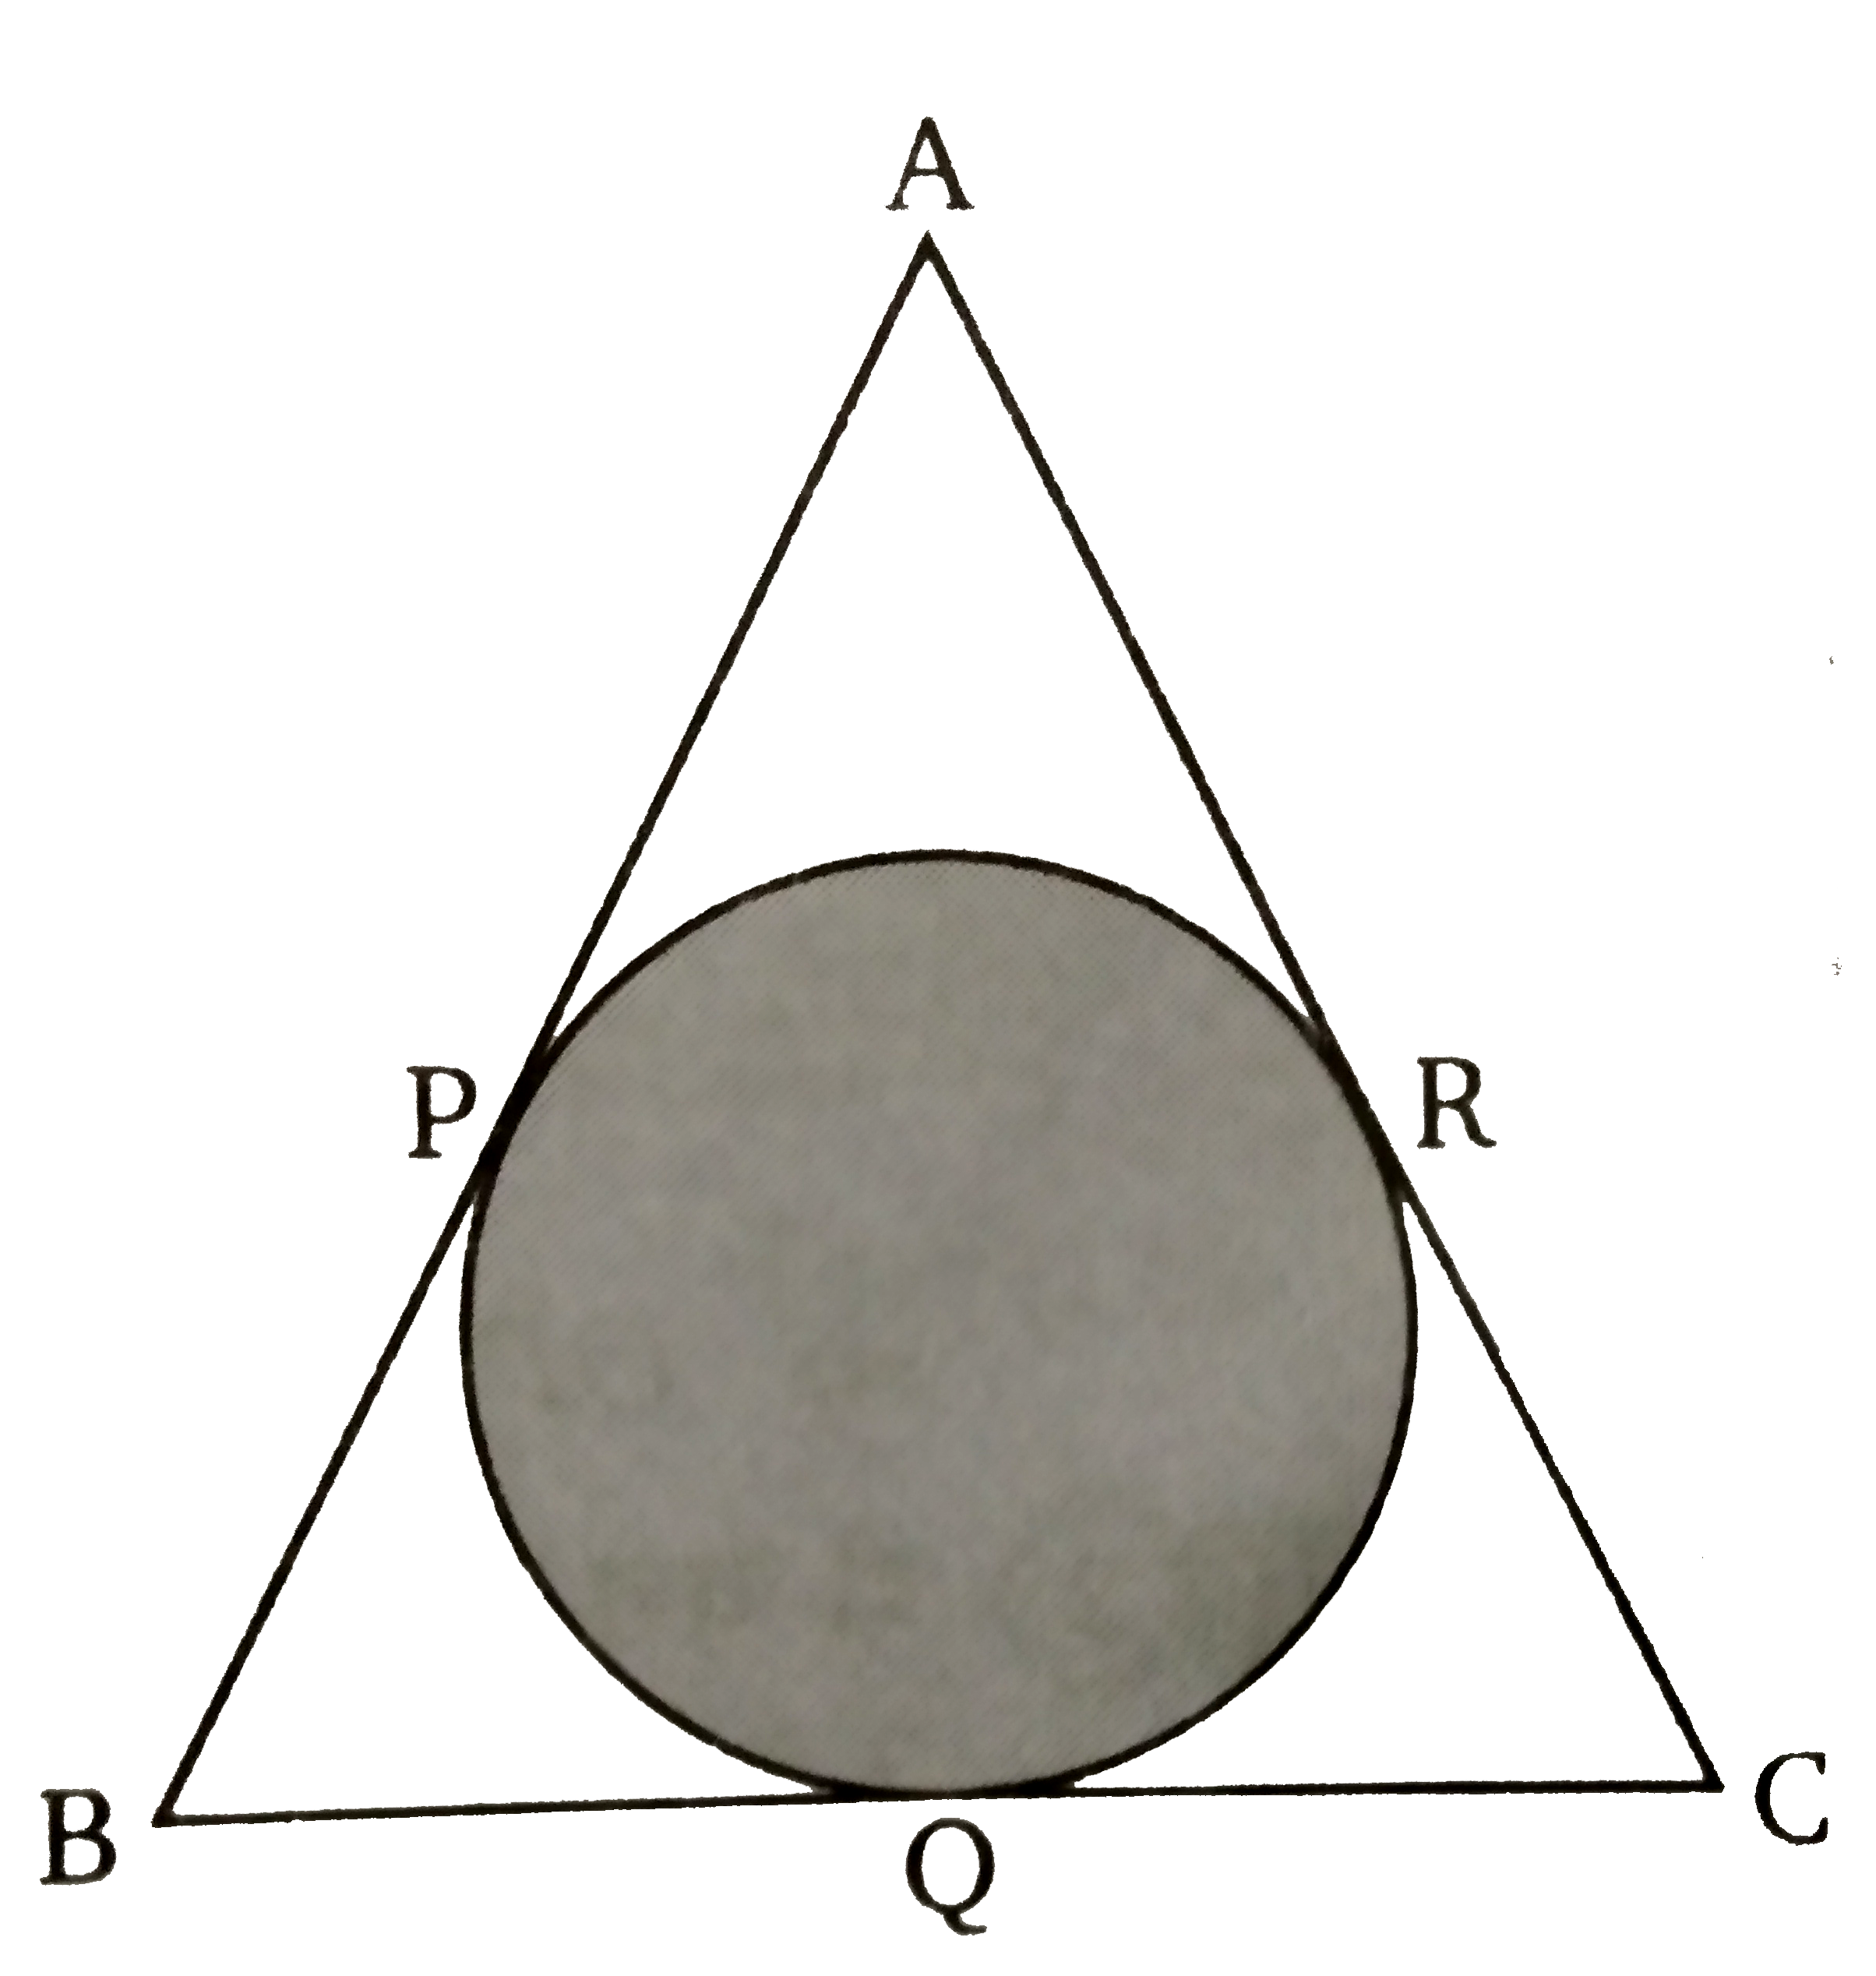 दिए  गए चित्र में त्रिभुज ABC  के अन्तर्गत एक वृत्त खींचा गया है। तथा P, Q, R  स्पर्श बिन्दु हैं। यदि PA = 4  सेमी, PB = 6  सेमी  तथा AC = 12  सेमी  हो तो BC  की माप ज्ञात कीजिए।